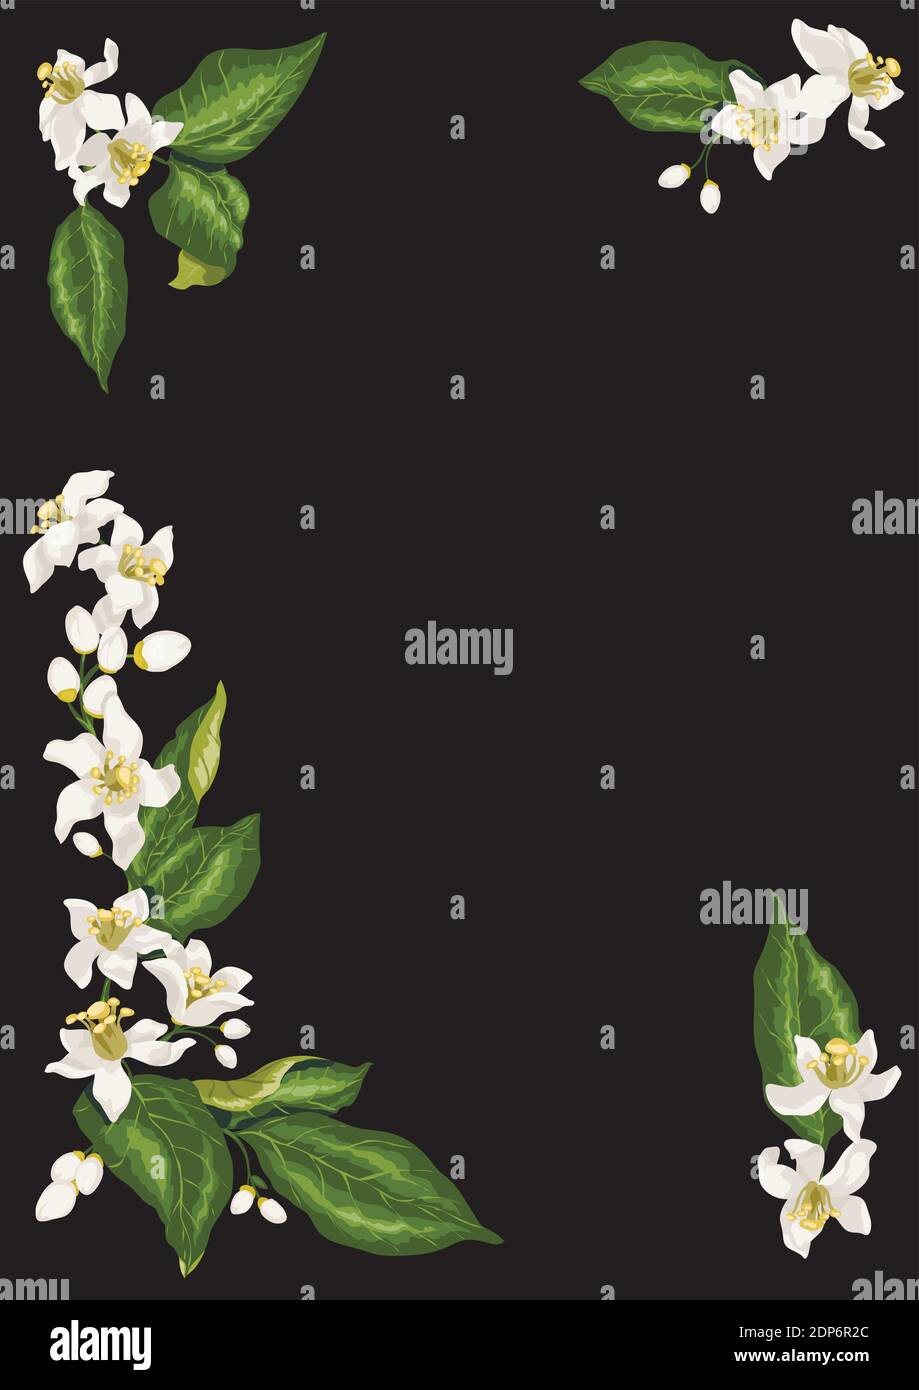 Rahmen für Postkarte mit vier Zweigen von Zitrusfrüchten Zitrone blühenden Obstbaum mit Blumen, Vektor Grafik Zitronenbaum Blumen Stock Vektor